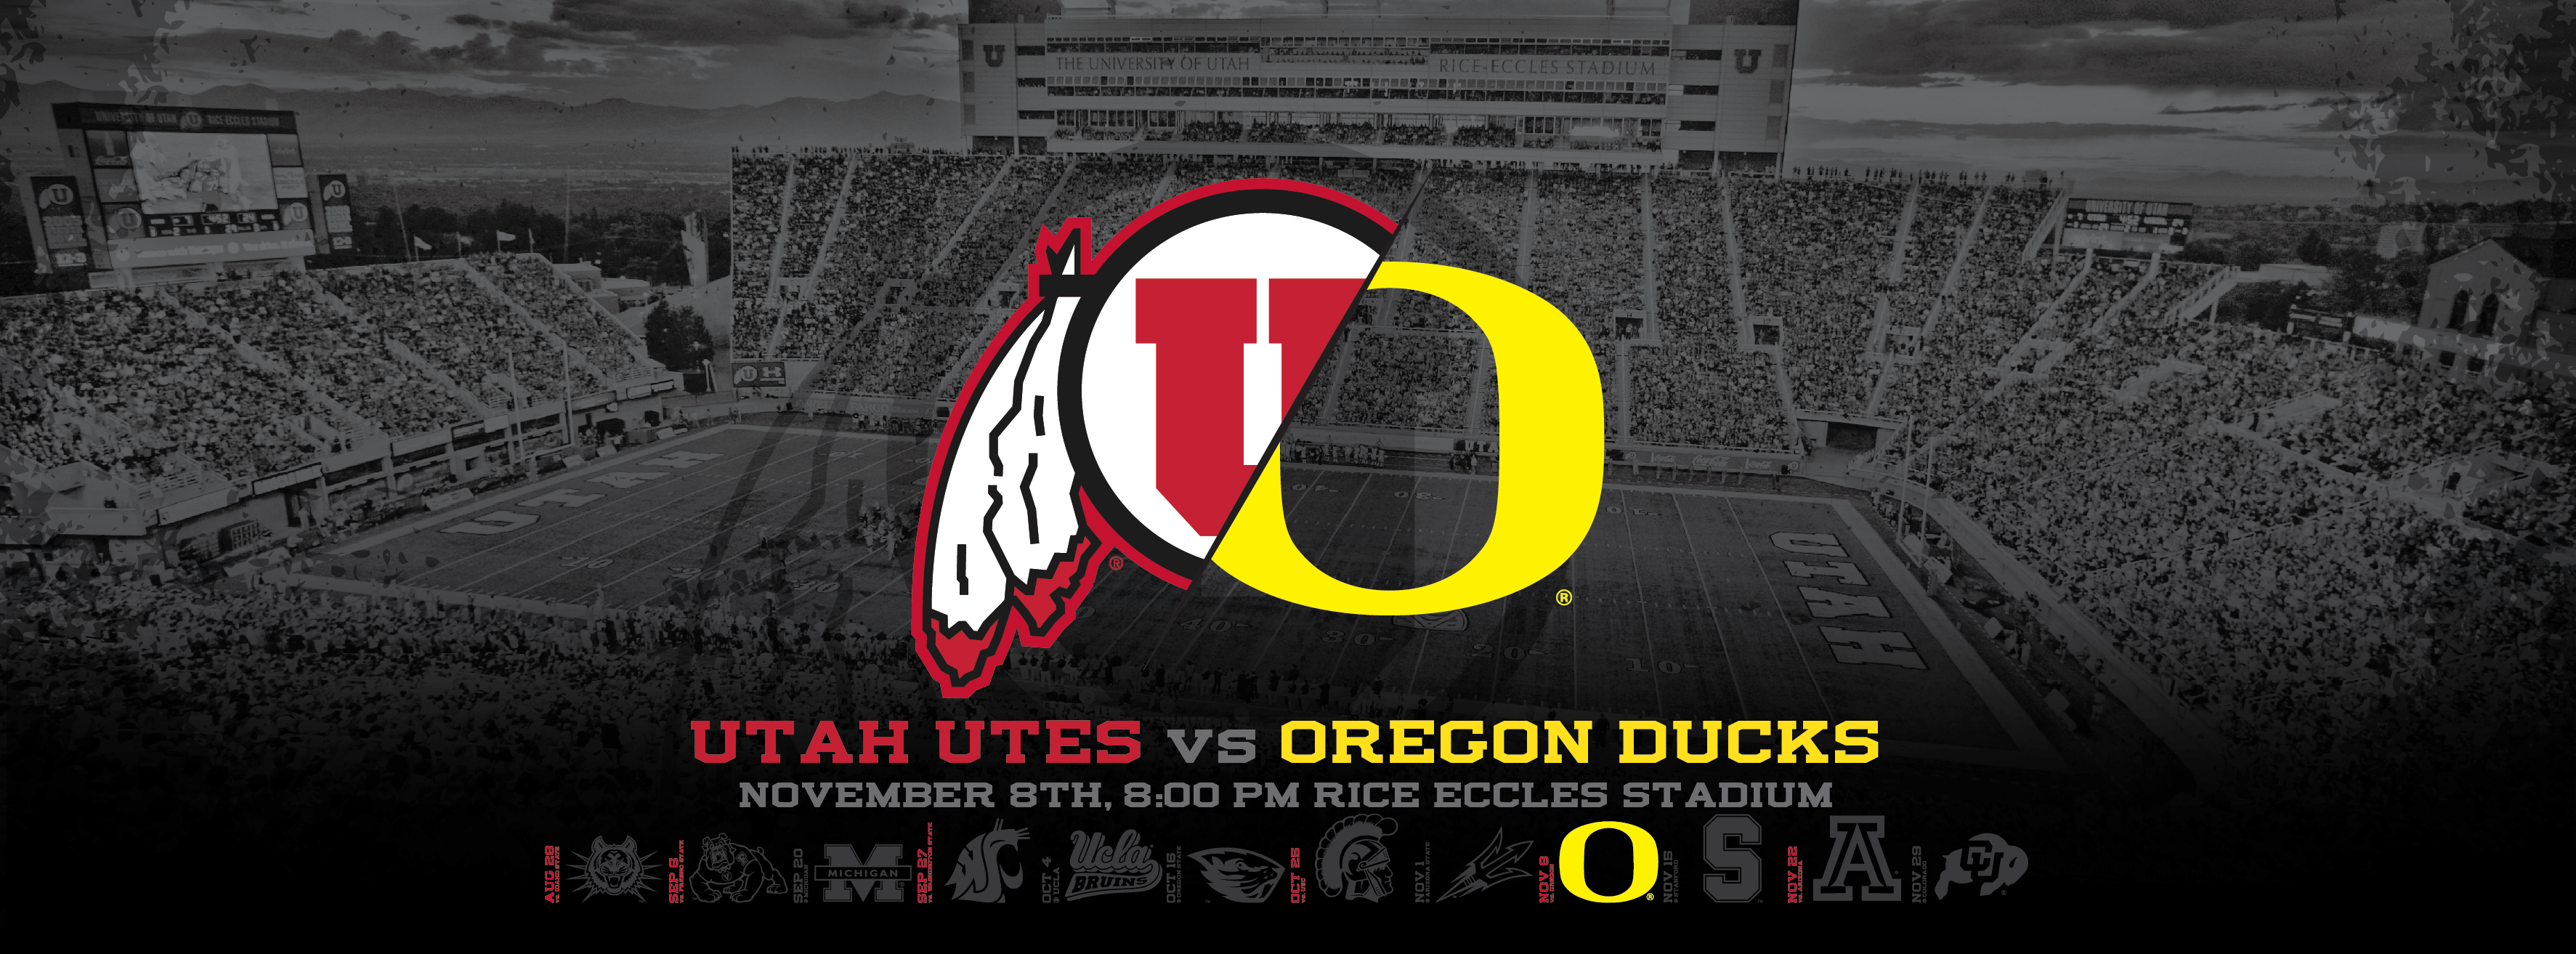 Utah Utes vs Oregon Ducks Wallpapers Dahlelama 3546x1313